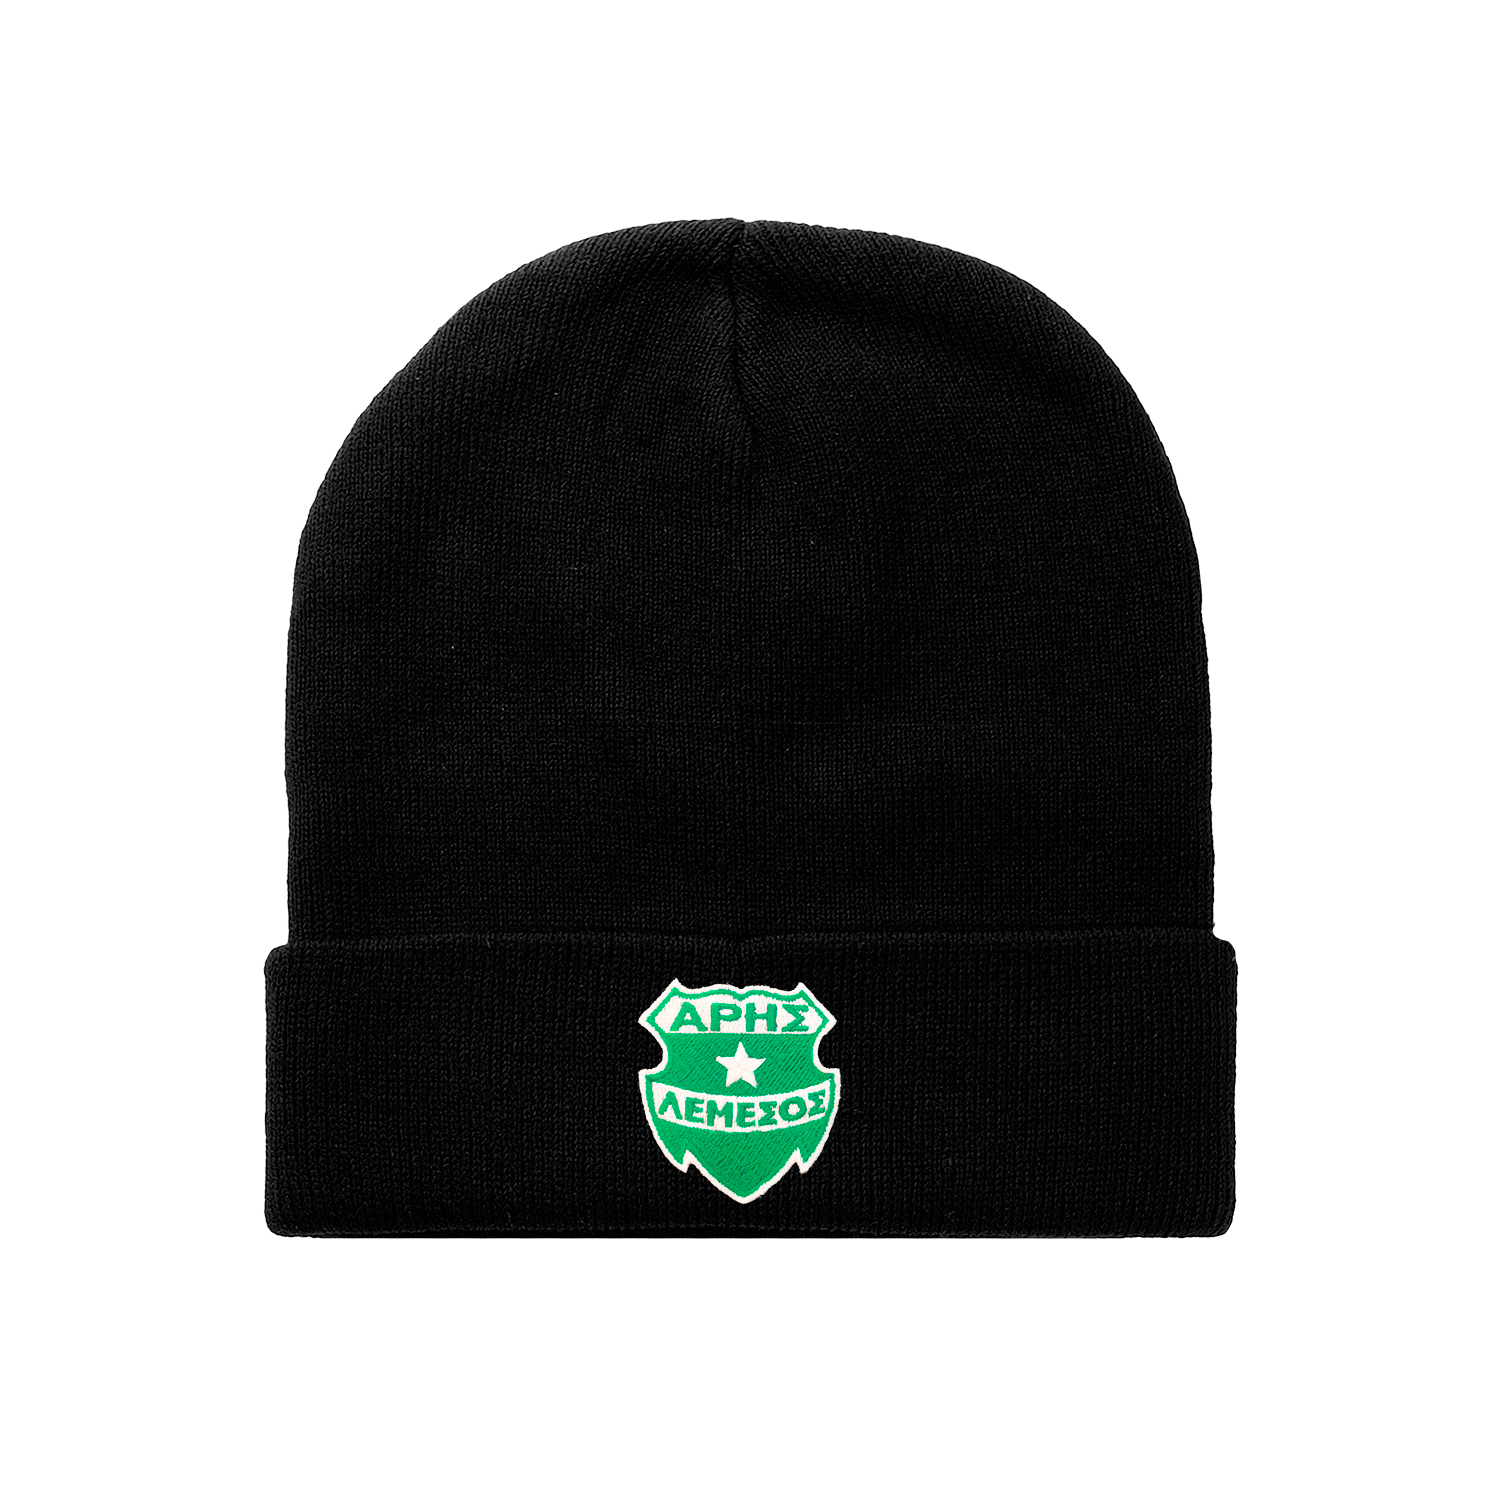 Χειμερινό καπέλο μαύρο logo